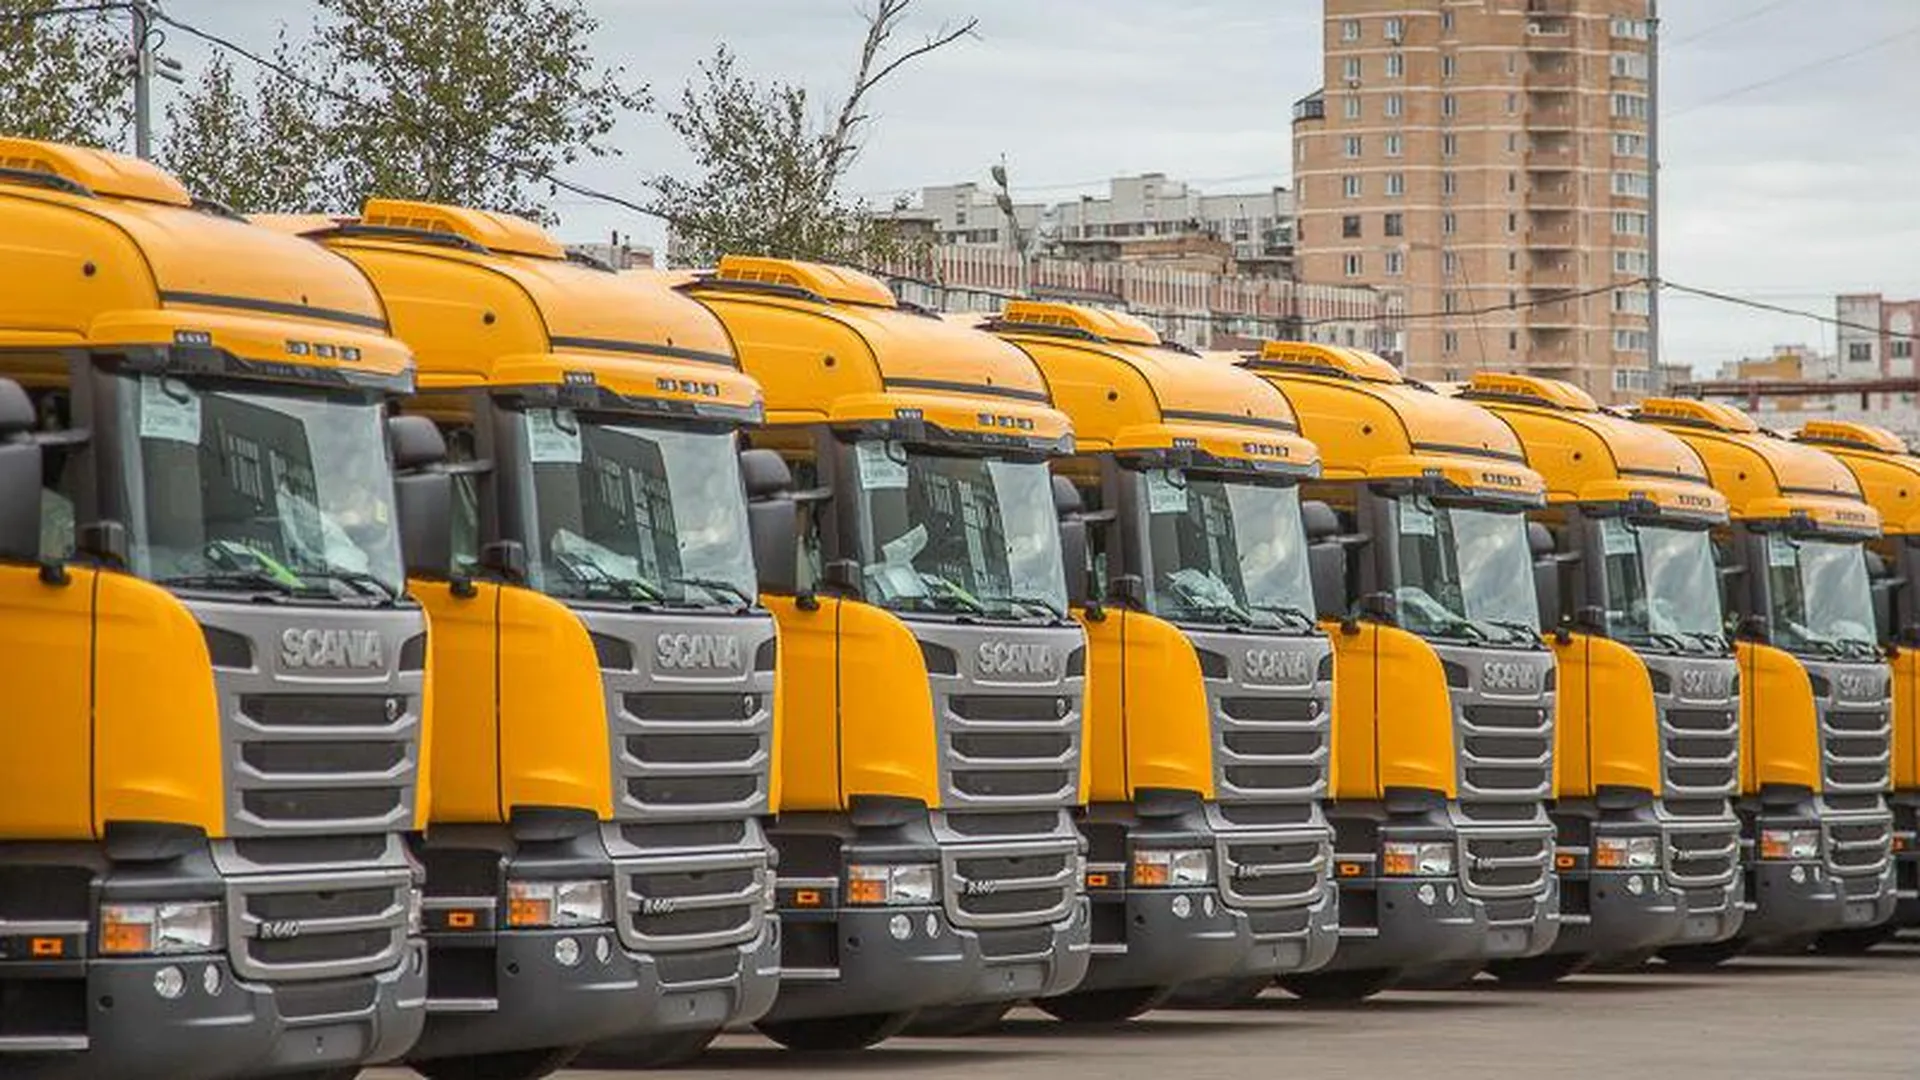 Станцию техобслуживания Scania открыли в Одинцовском районе